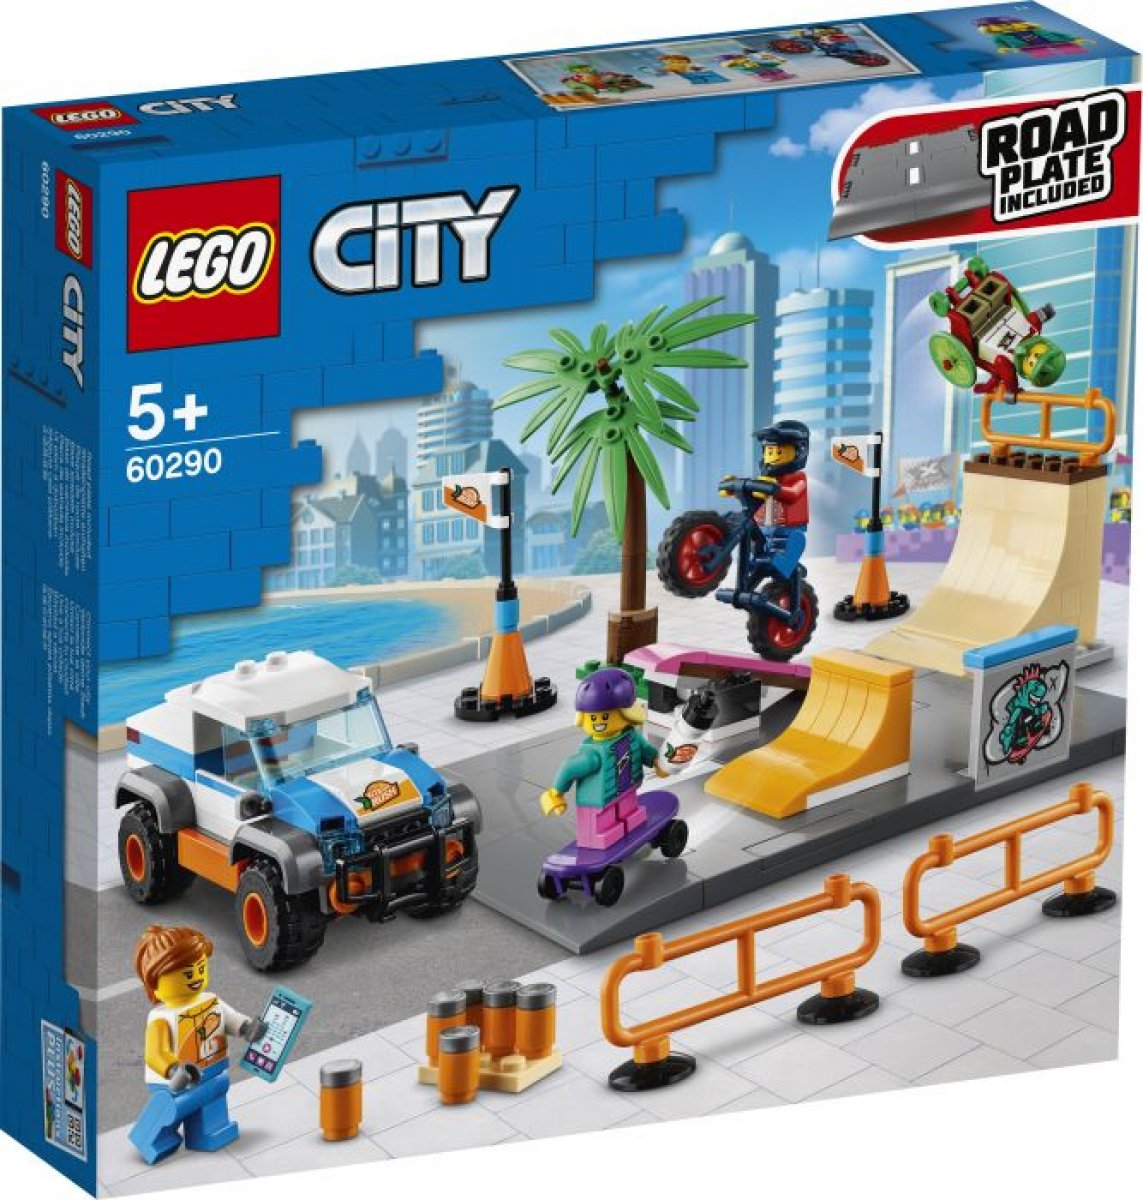 LEGO City 60290 Skate Park 